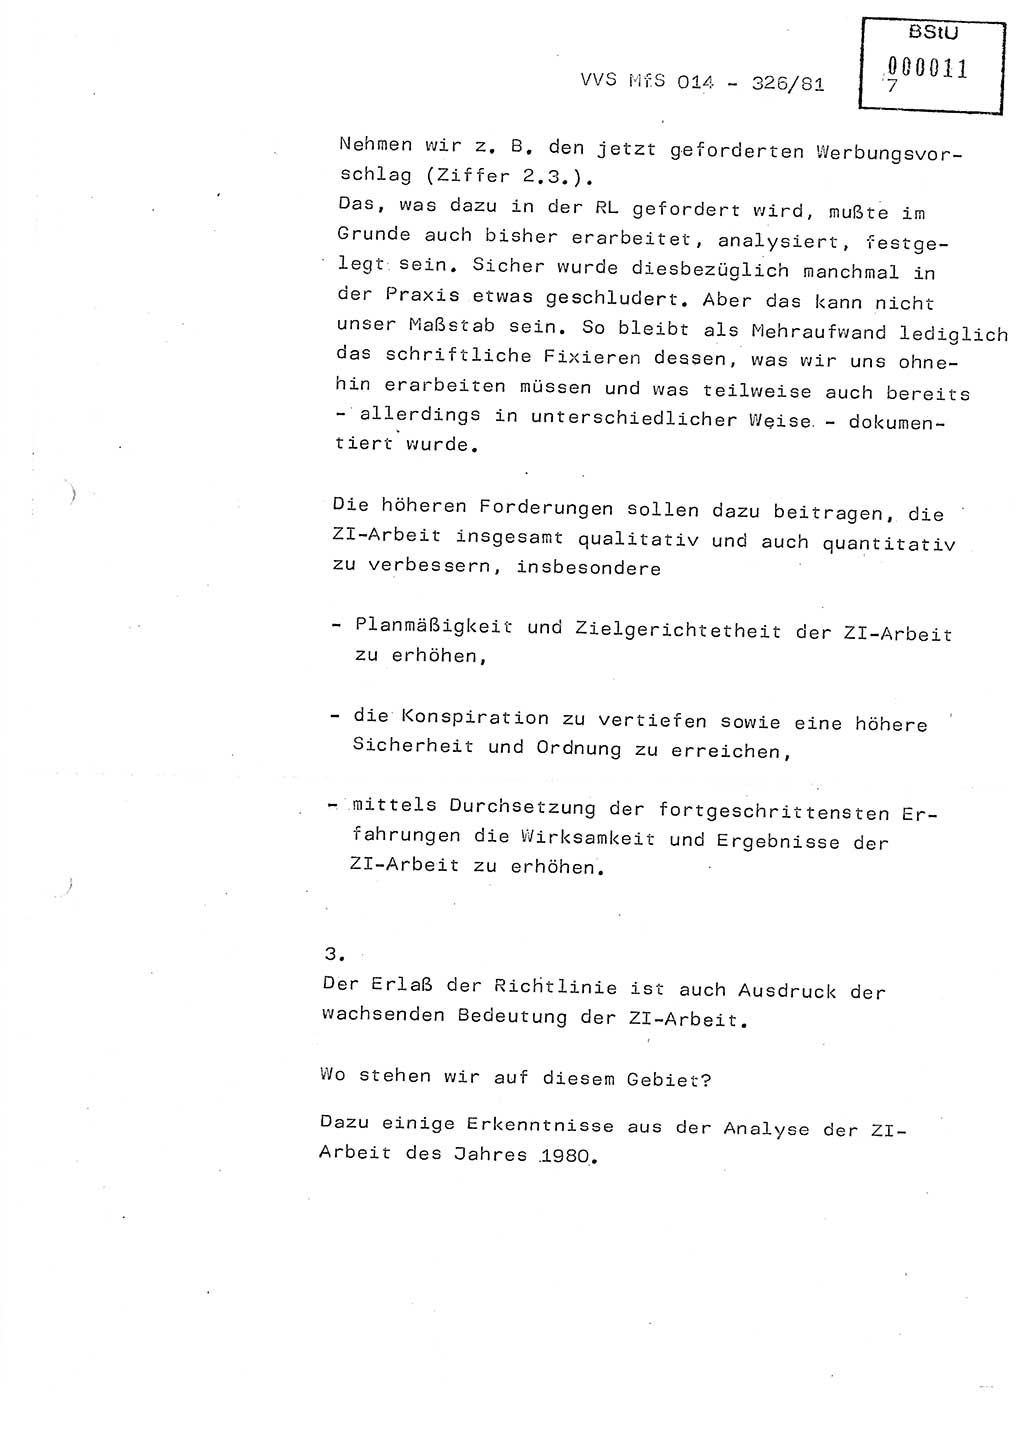 Thesen zum Einführungsvortrag für die Schulung zur Richtlinie Nr. 2/81 [zur Arbeit mit Zelleninformatoren (ZI)] des Genossen Minister (Generaloberst Erich Mielke), Ministerium für Staatssicherheit (MfS) [Deutsche Demokratische Republik (DDR)], Hauptabteilung (HA) Ⅸ, Vertrauliche Verschlußsache (VVS) 014-326/81, Berlin 1981, Seite 7 (Th. Sch. RL 2/81 MfS DDR HA Ⅸ VVS 014-326/81 1981, S. 7)